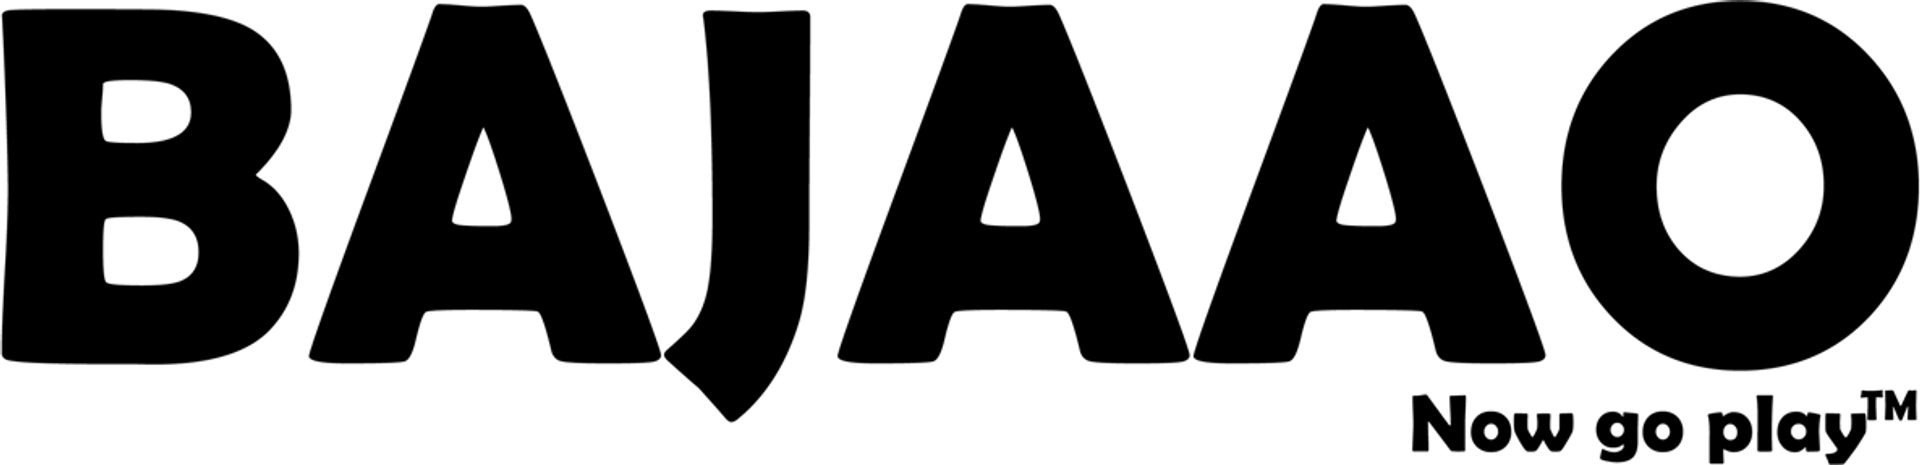 BAJAAO logo. Current weekly ad